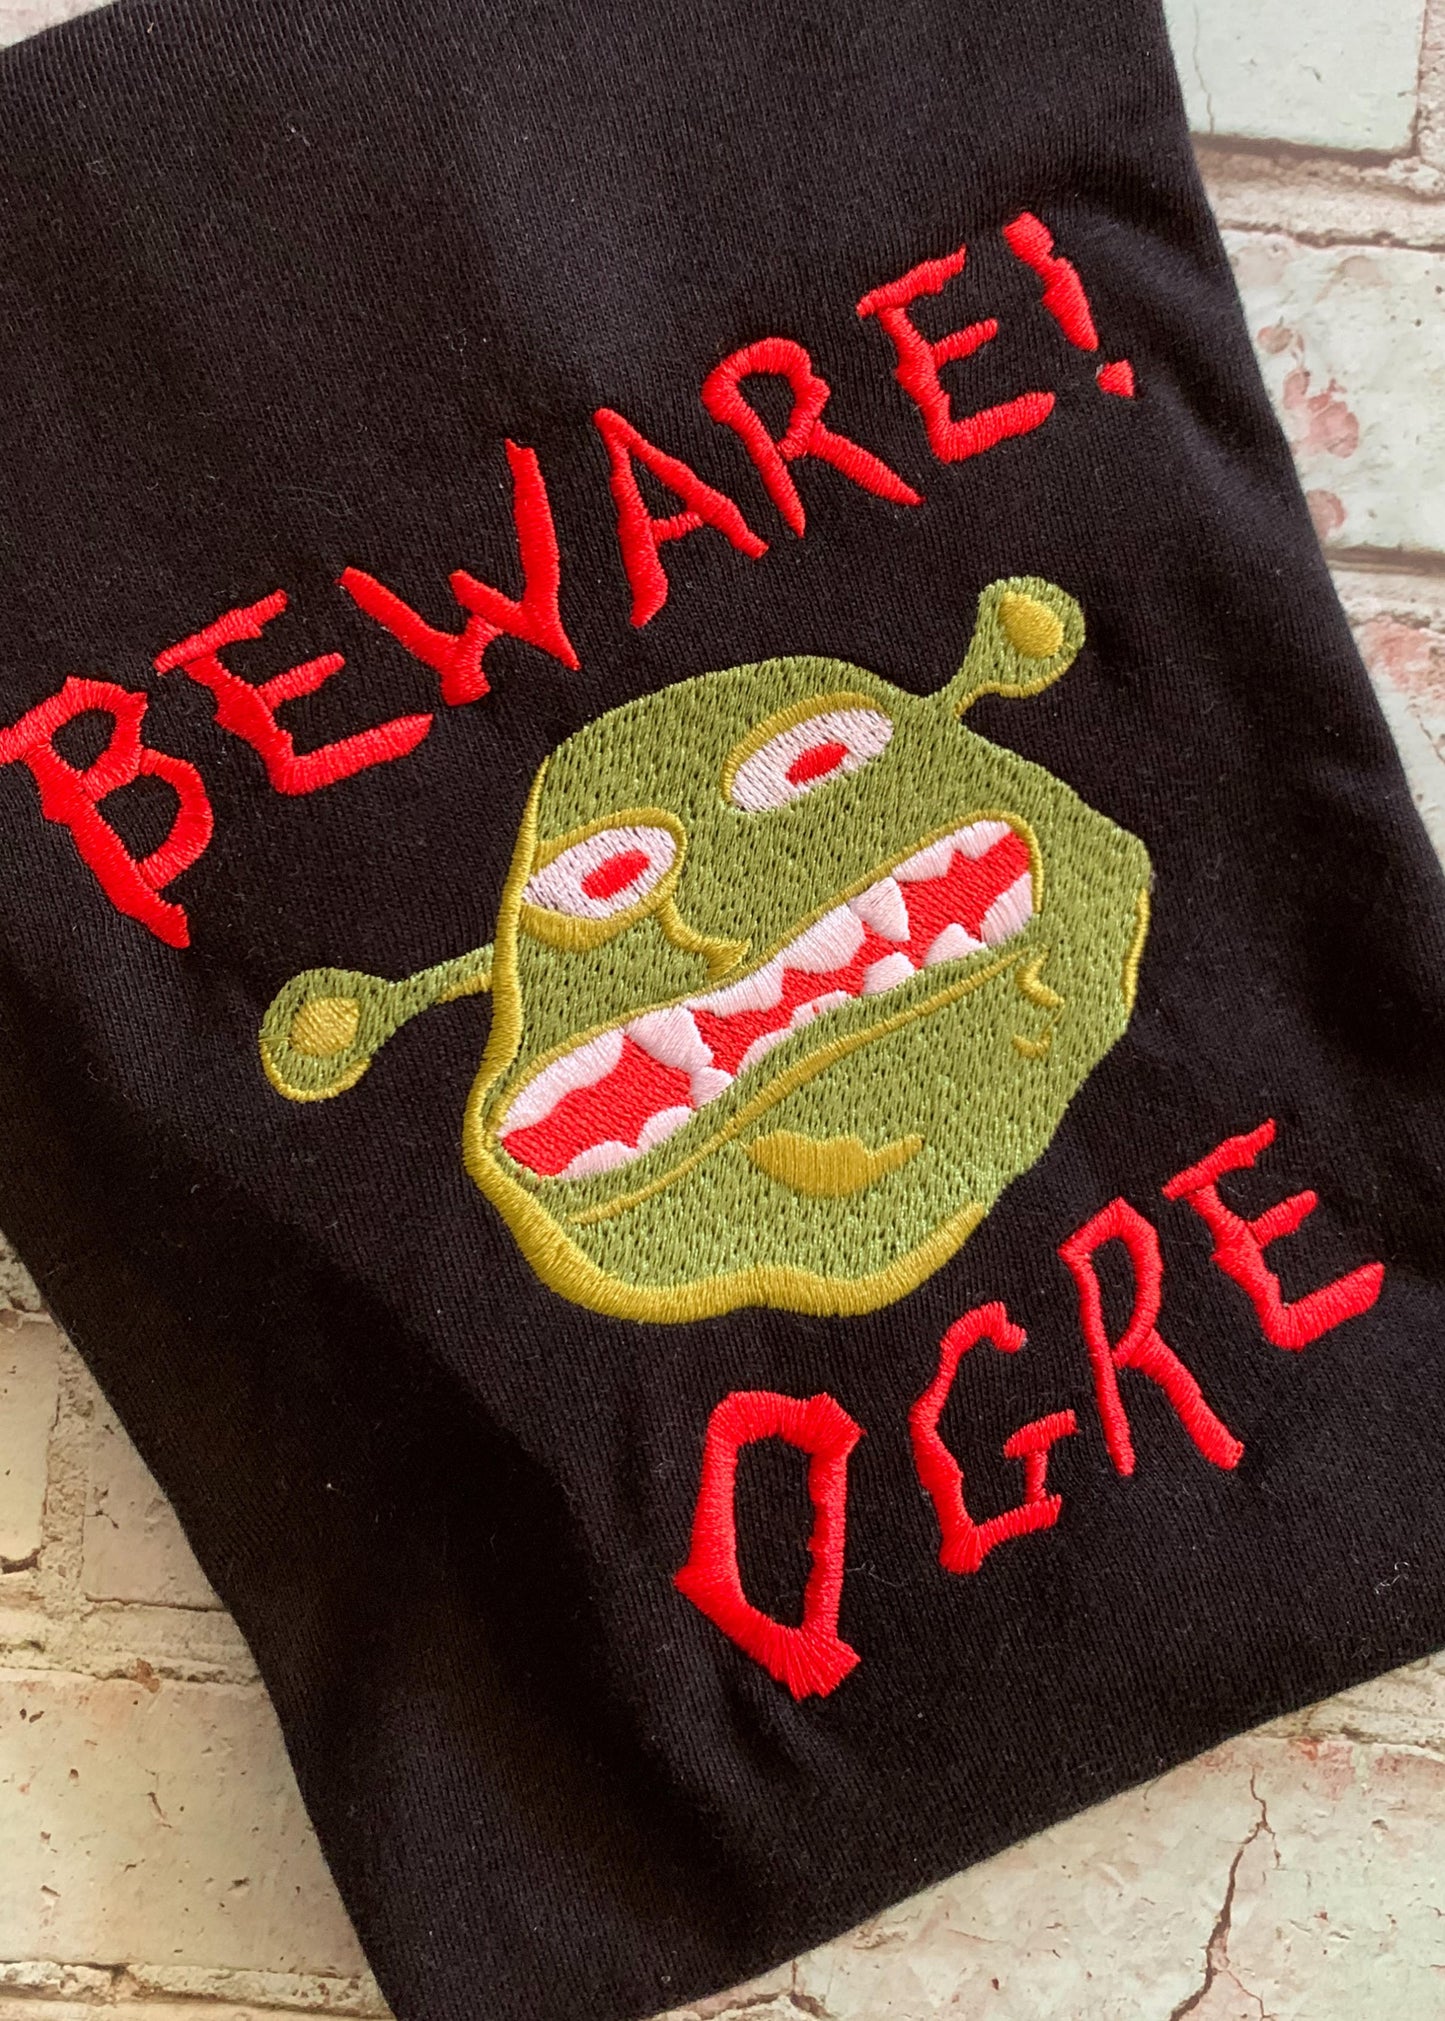 Beware OGRE! Embroidery Design